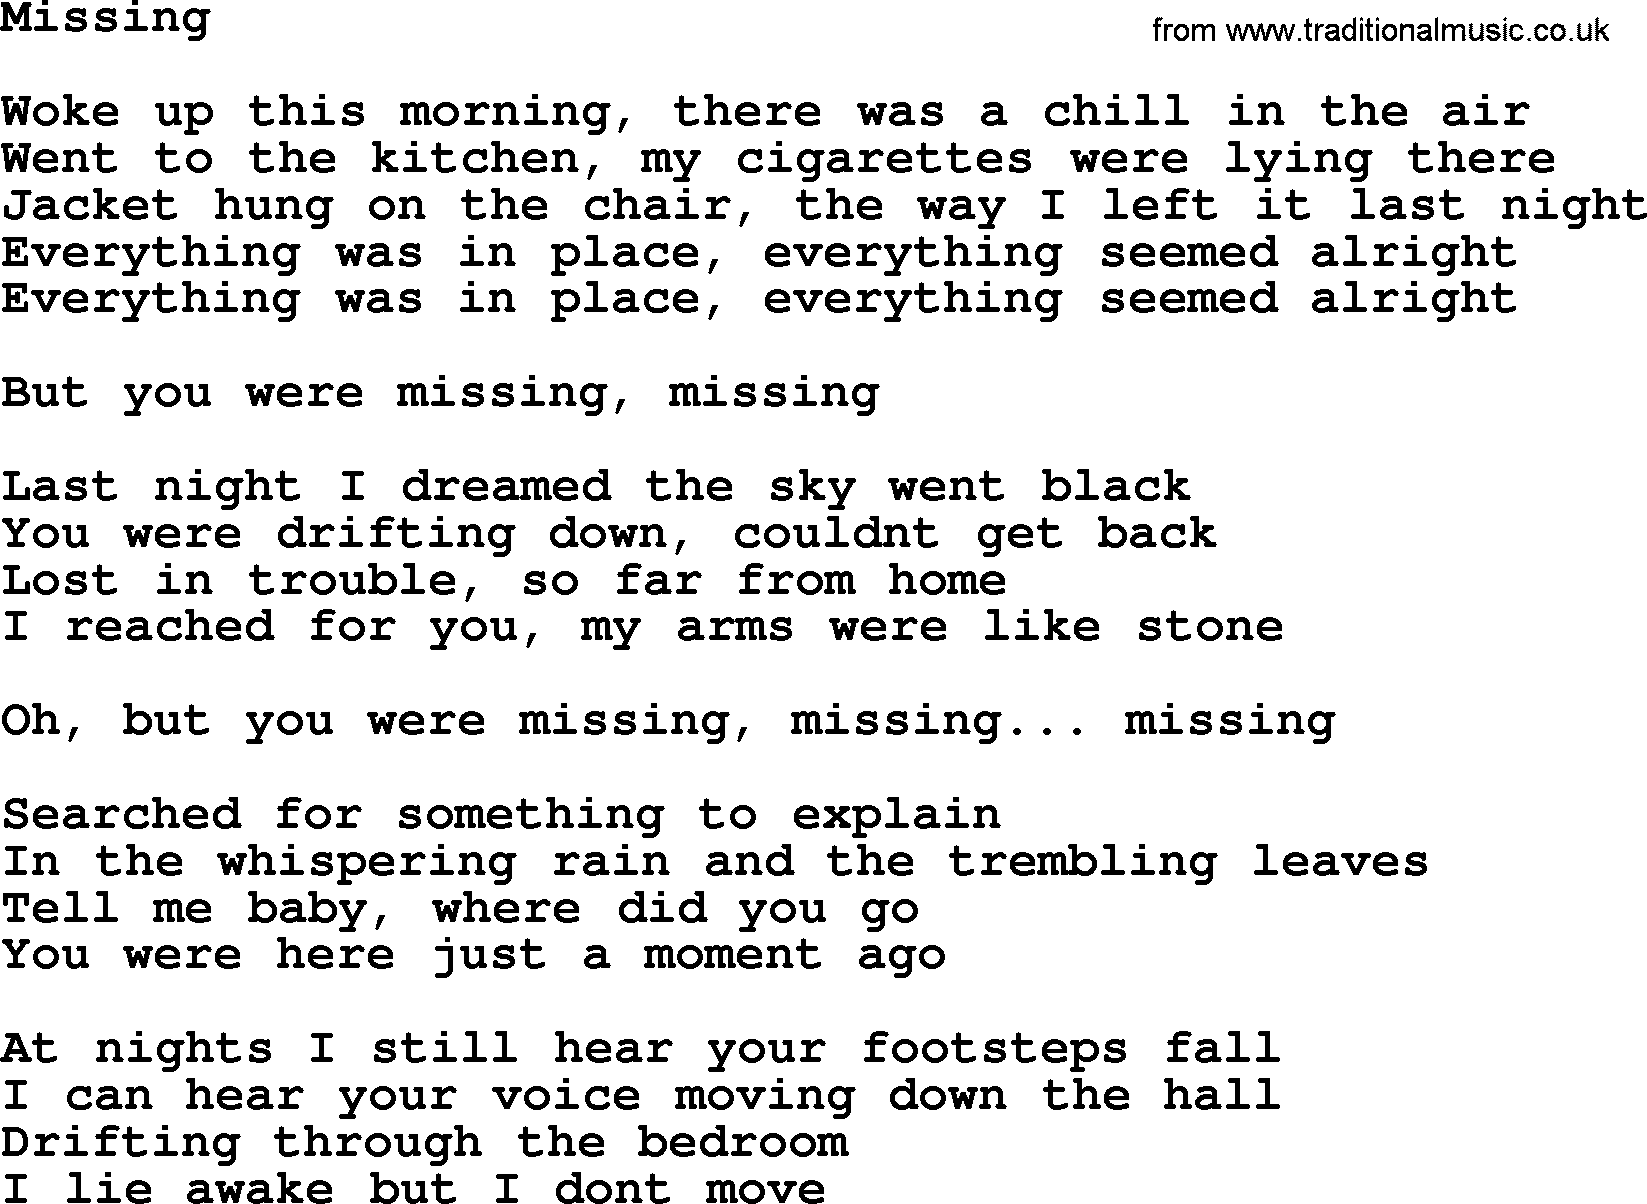 Bruce Springsteen song: Missing lyrics